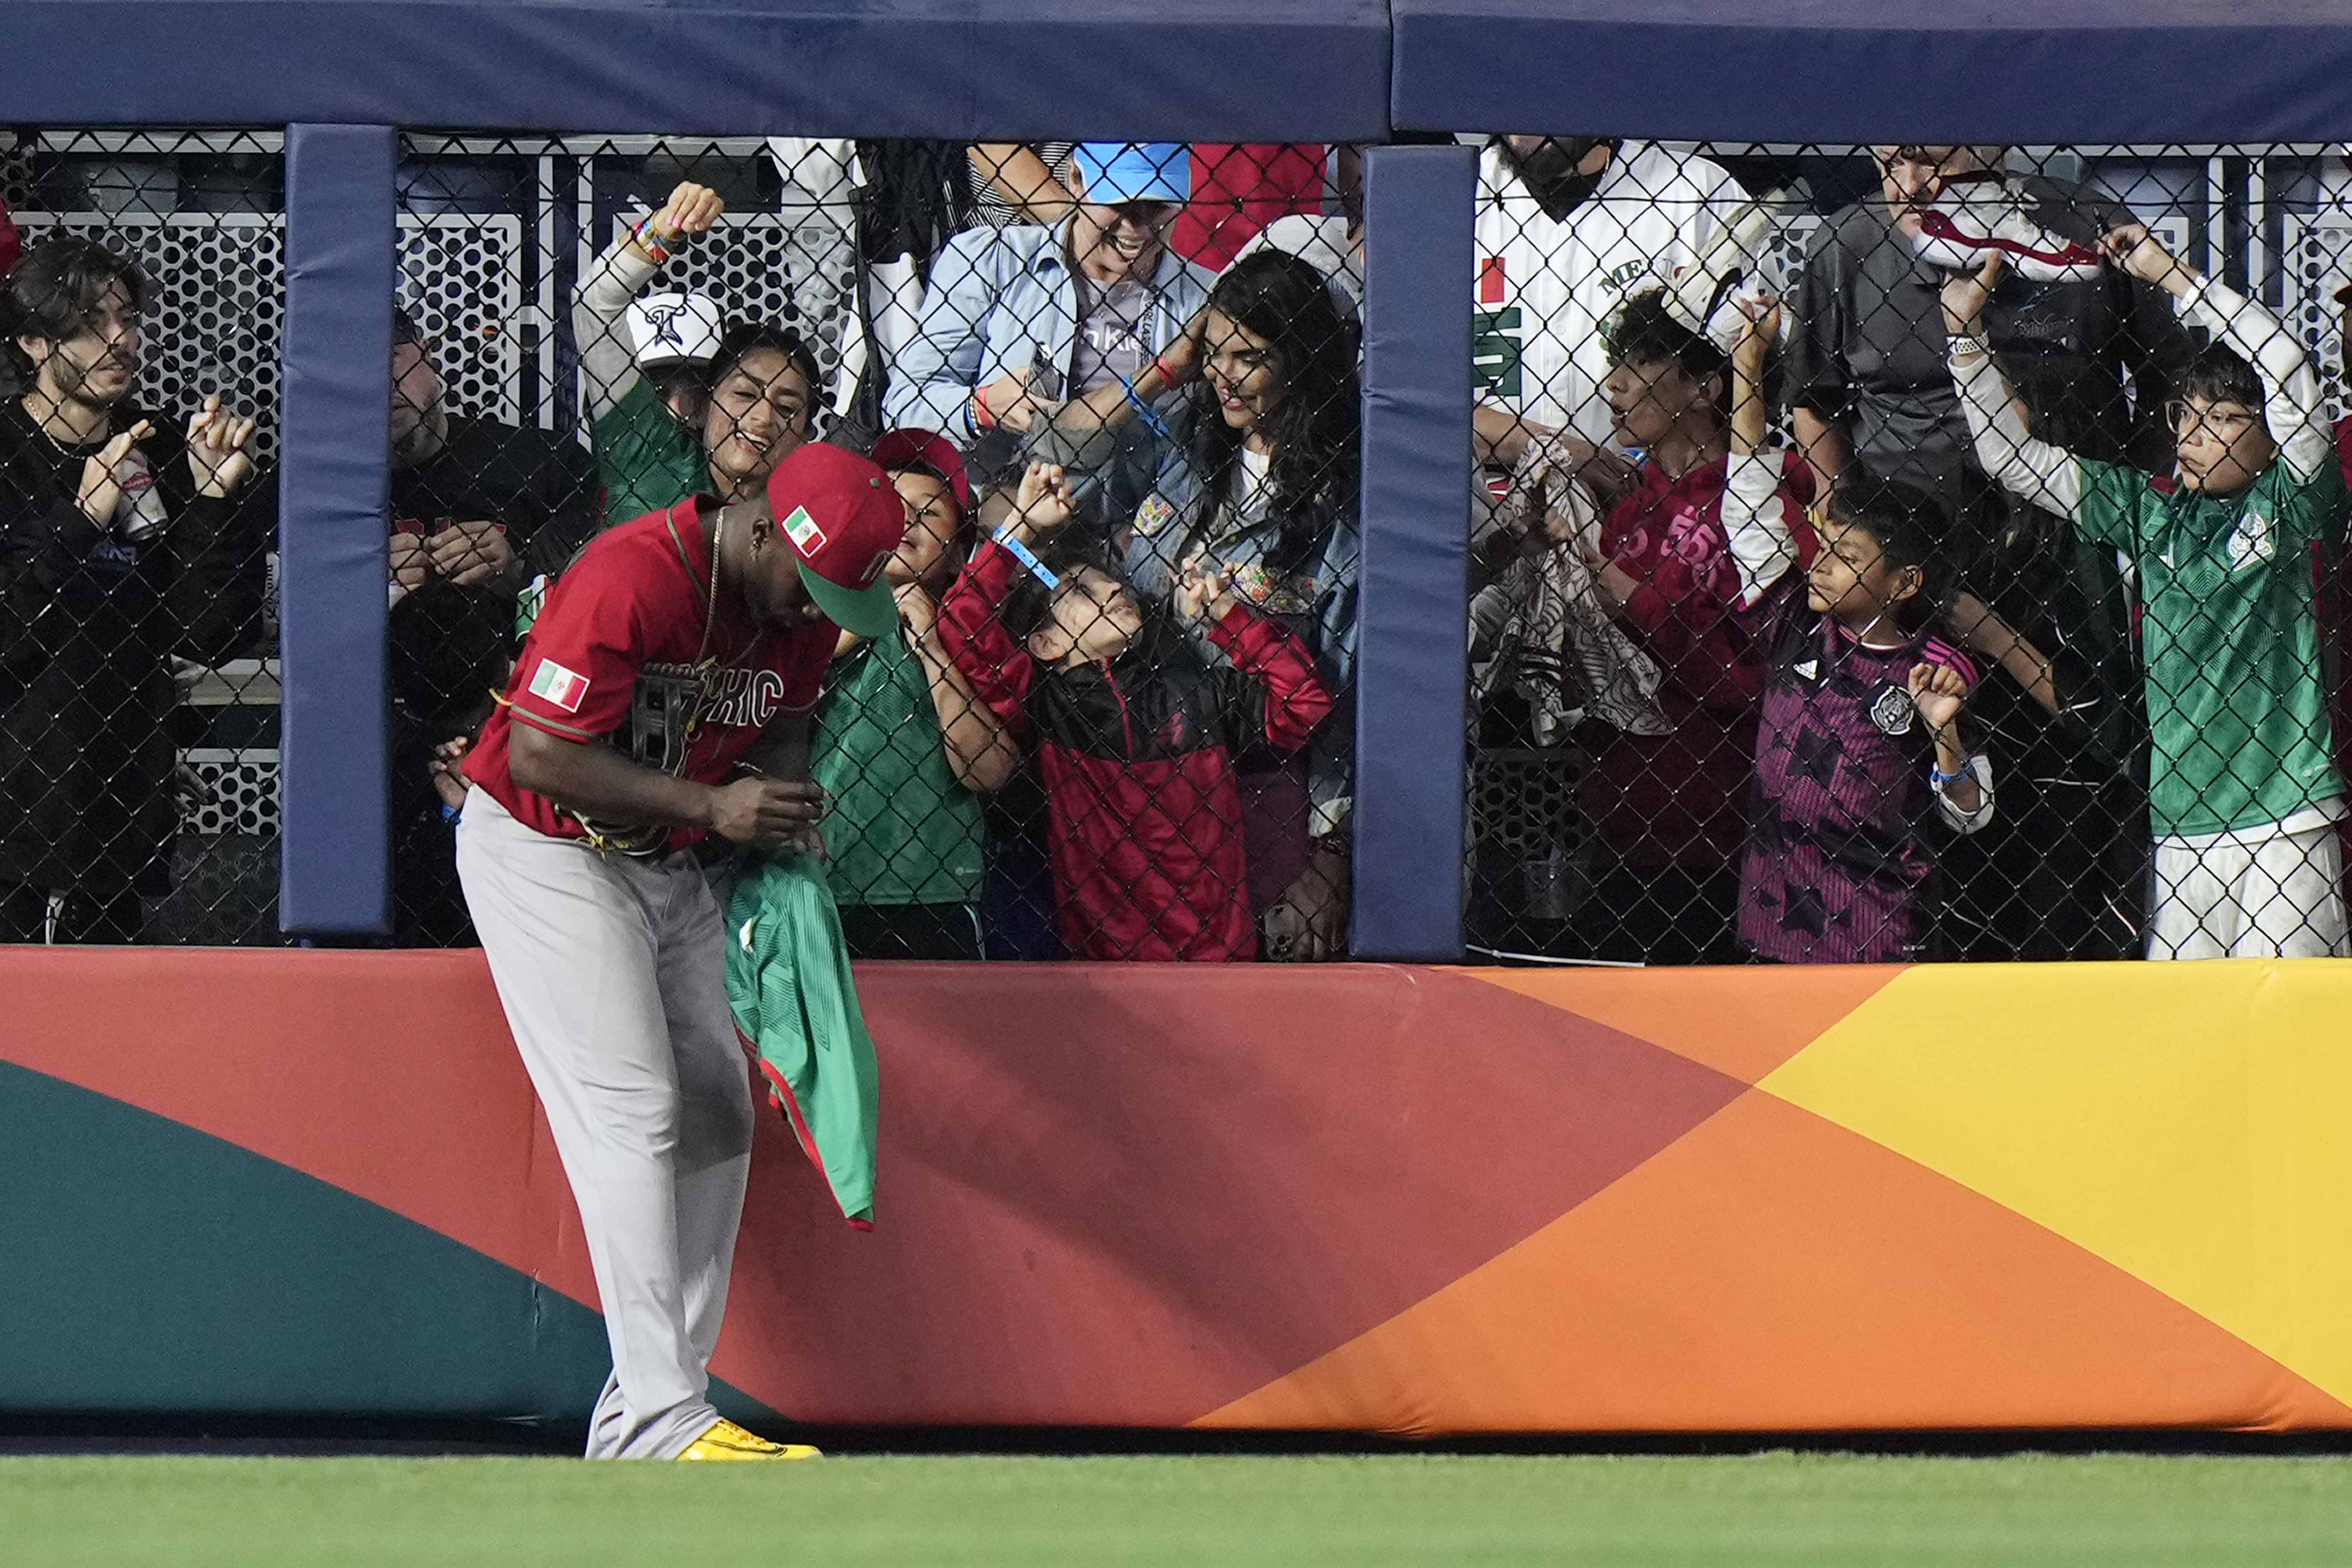 El jardinero izquierdo de México Randy Arozarena firma autógrafos durante un cambio de lanzadores en el séptimo inning de la semifinal contra Japón en el Clásico Mundial de béisbol, el lunes 20 de marzo de 2023, en Miami. (AP Foto/Wilfredo Lee)